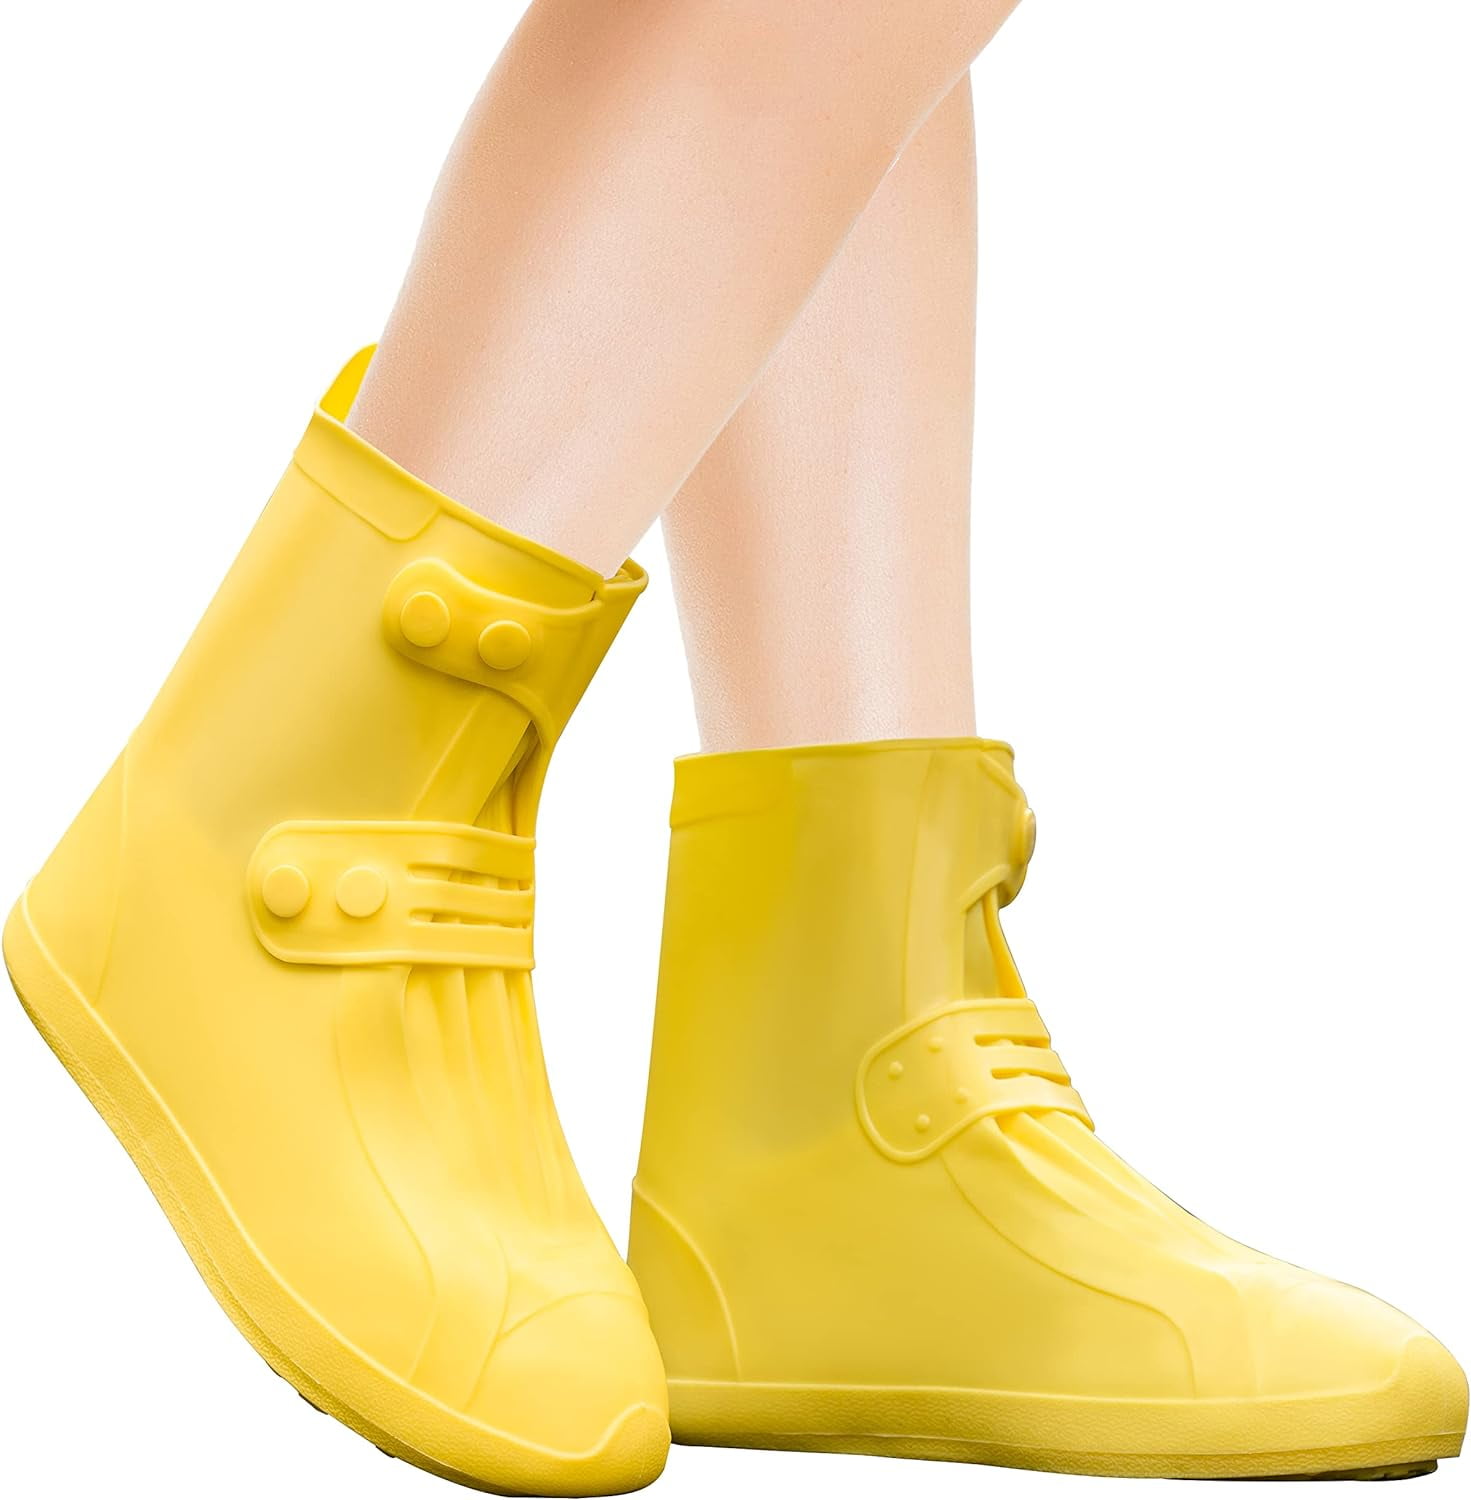 Rain Shoe Covers | Waterproof Shoe Covers for Men Women | Reusable ...